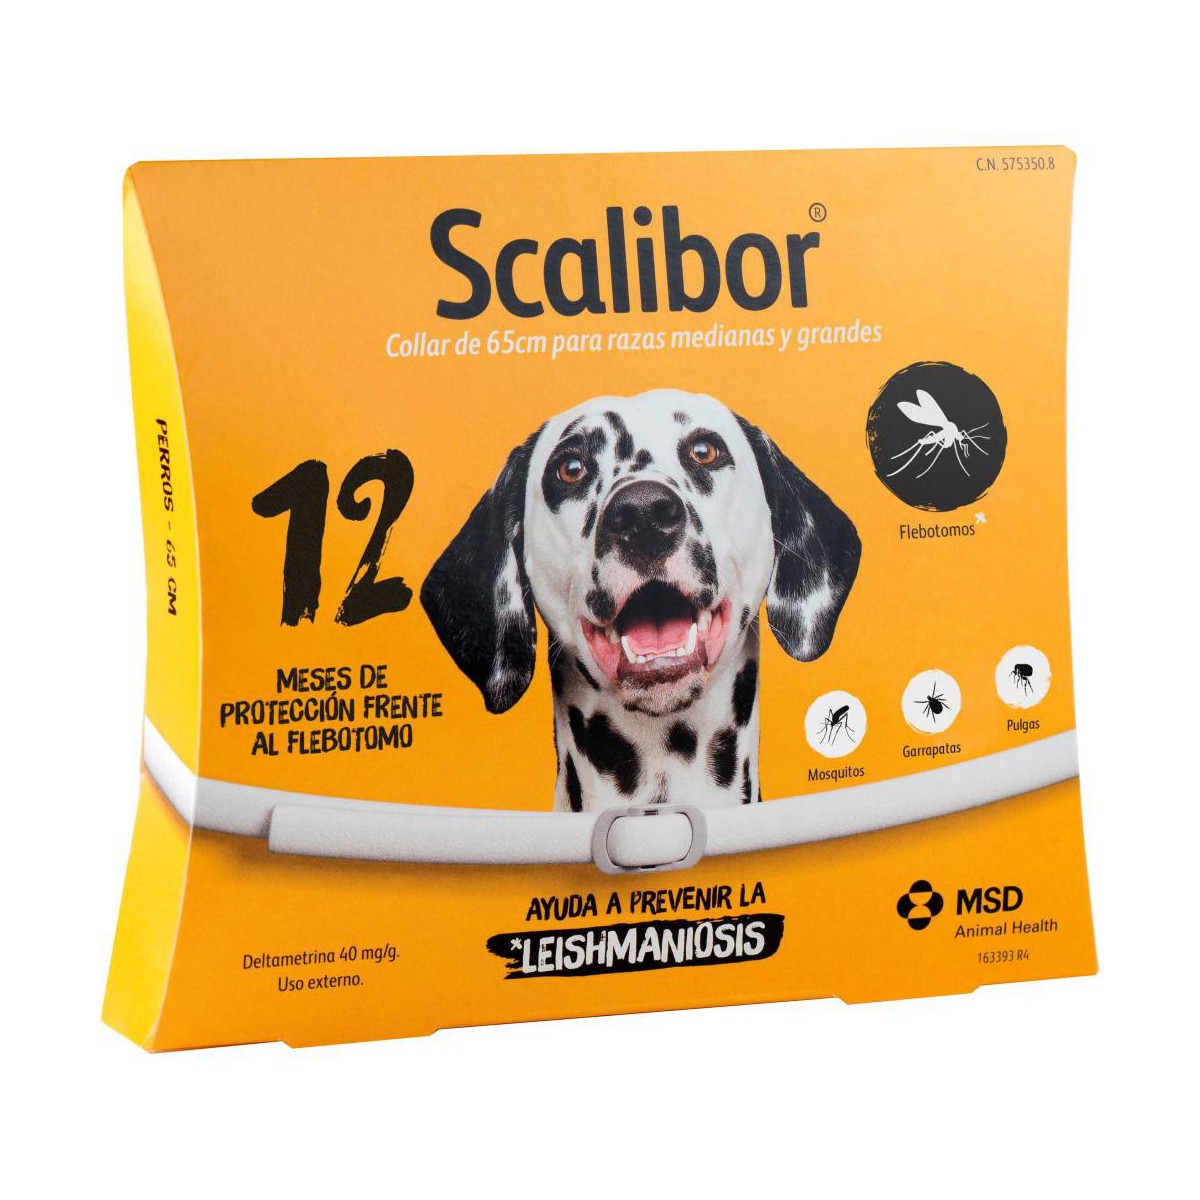 Scalibor Collar 65 cm para Perros Grandes con Protección de 12 Meses